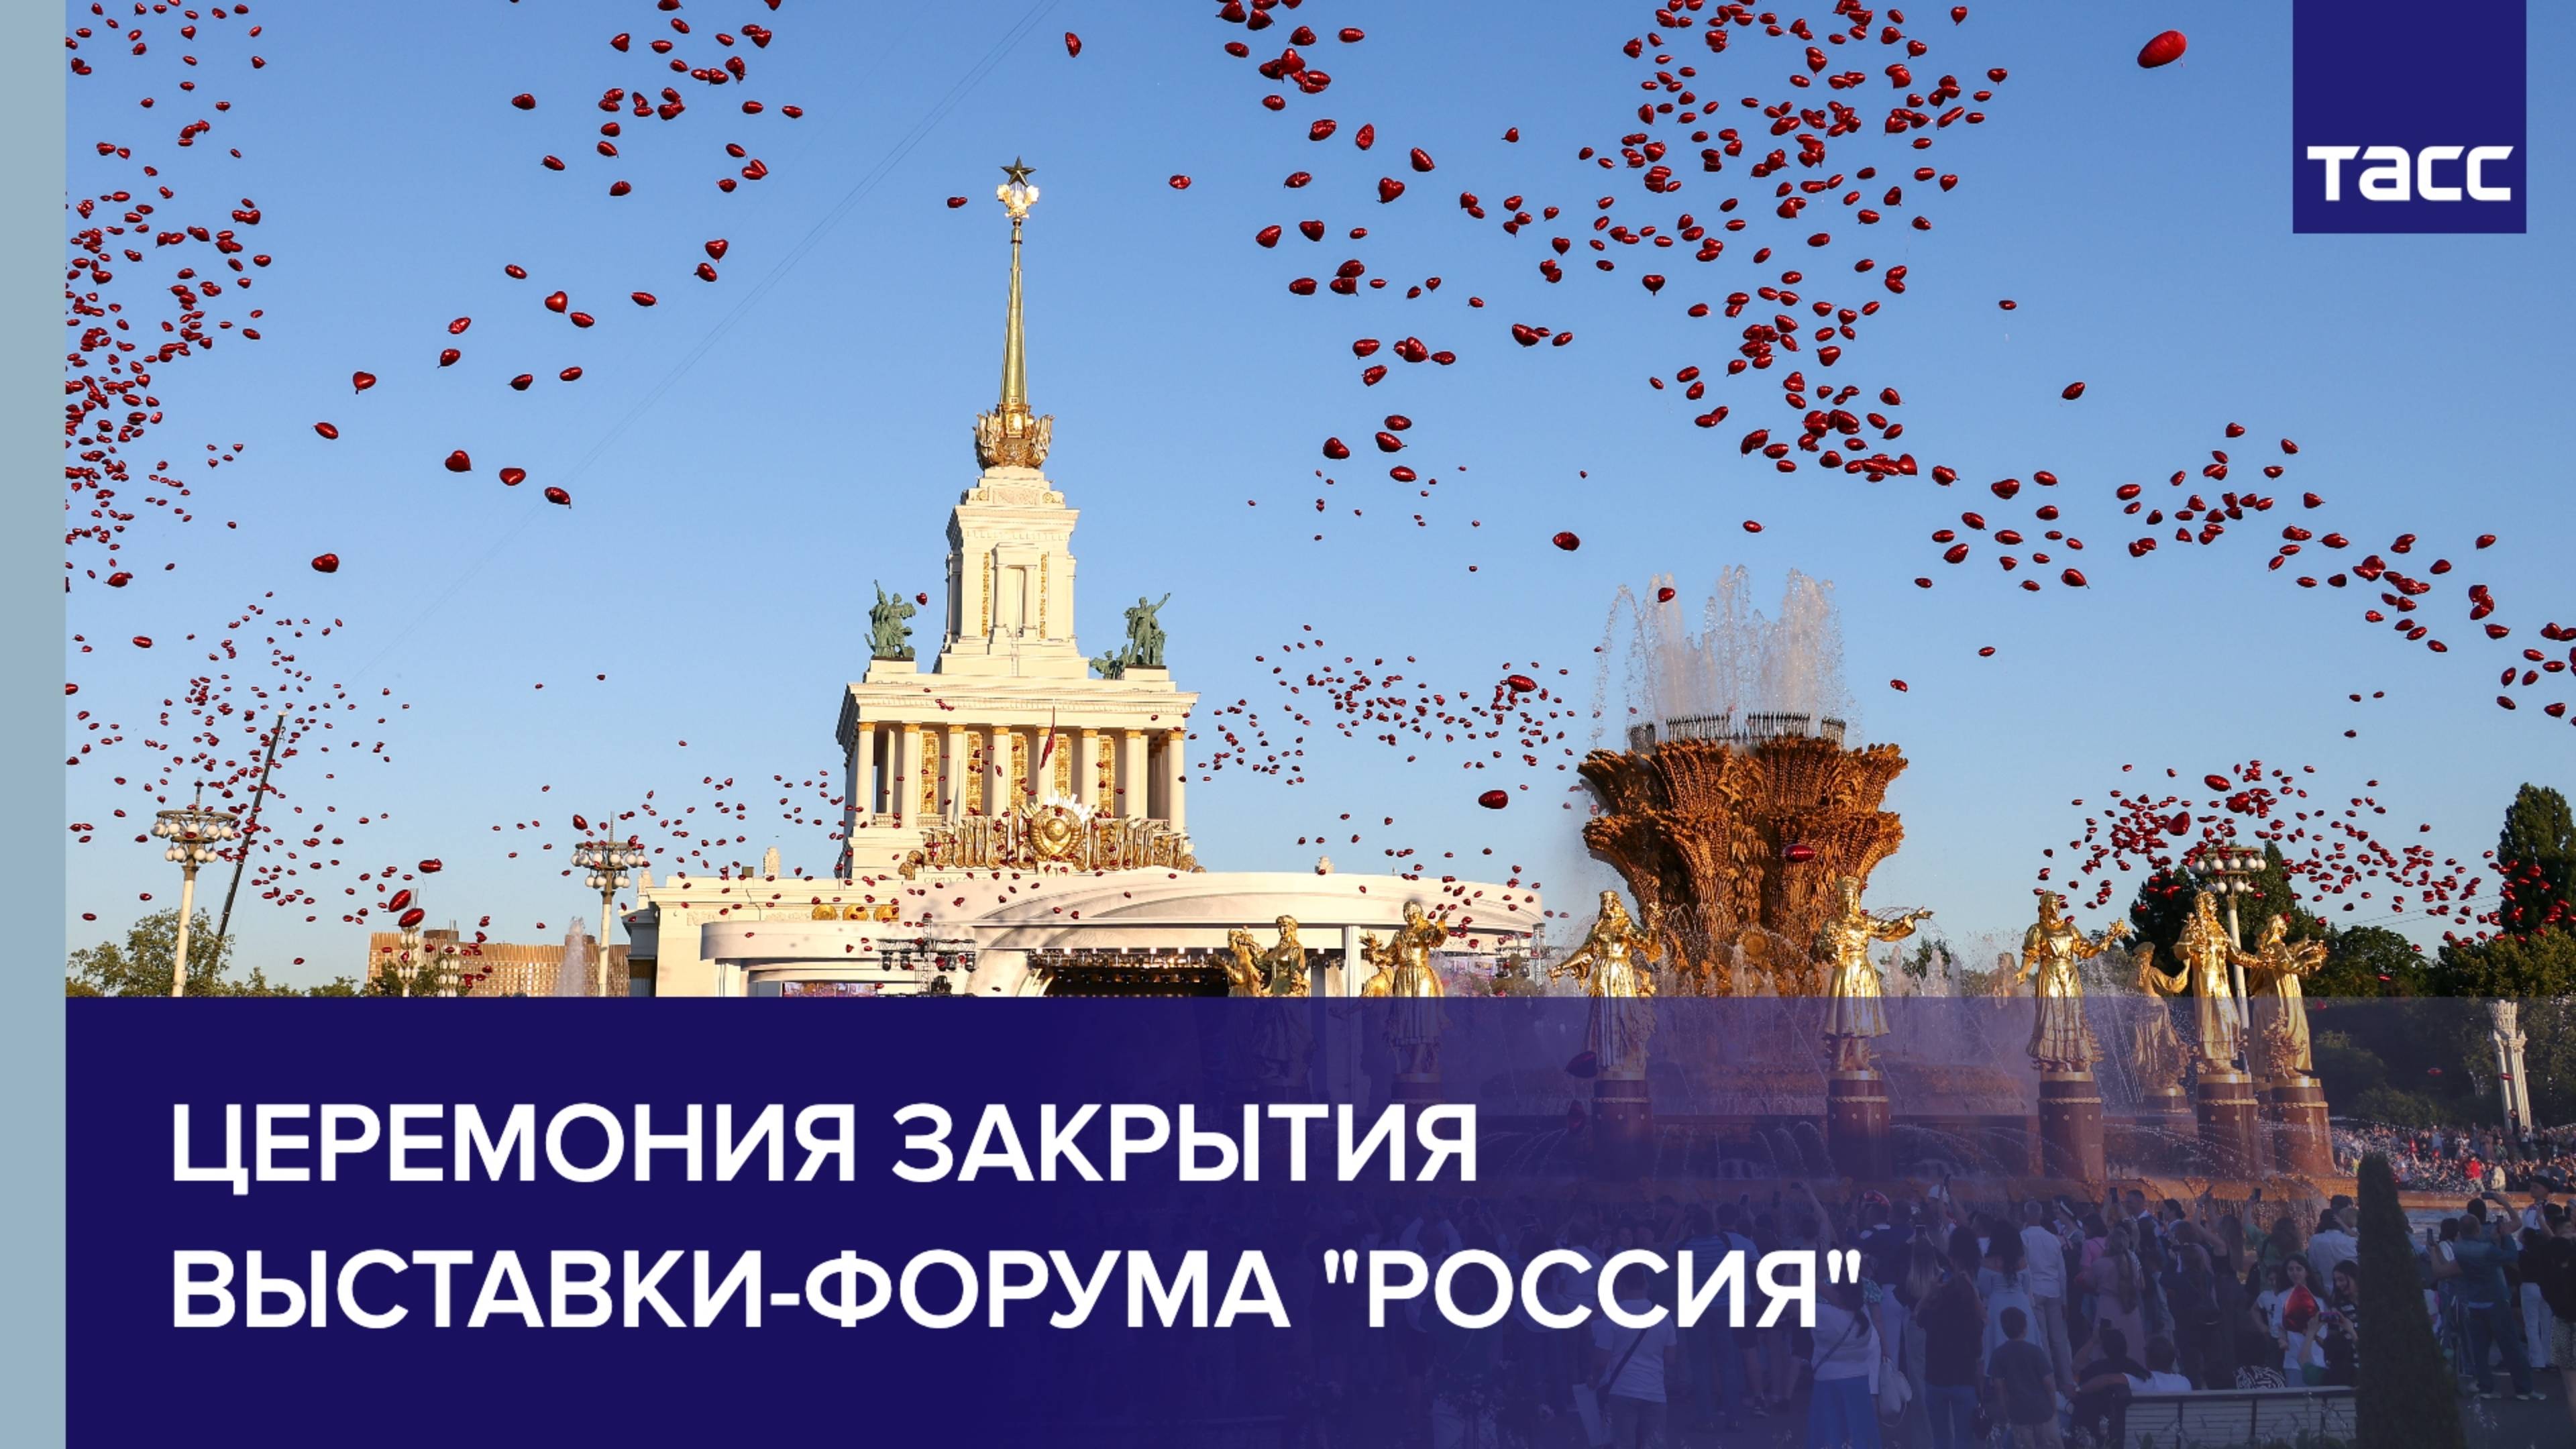 Церемония закрытия выставки-форума "Россия"